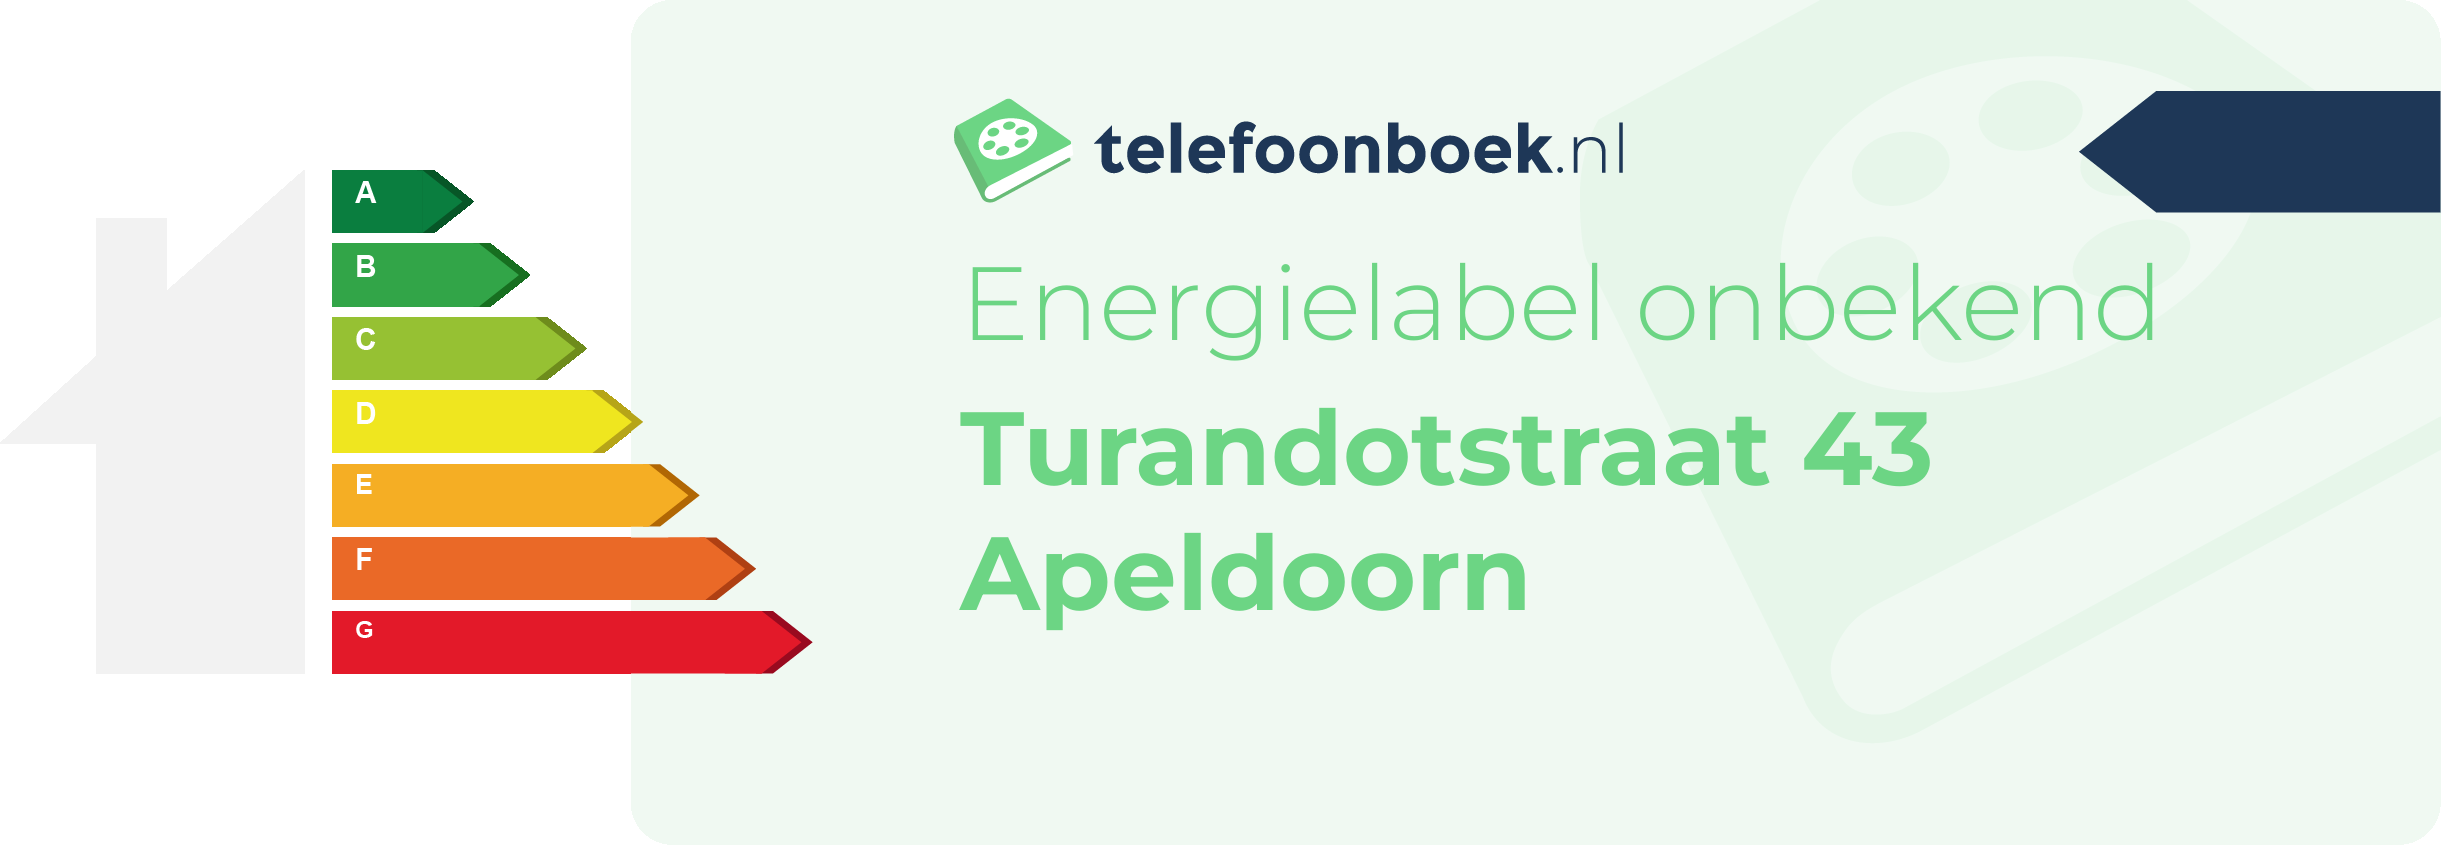 Energielabel Turandotstraat 43 Apeldoorn